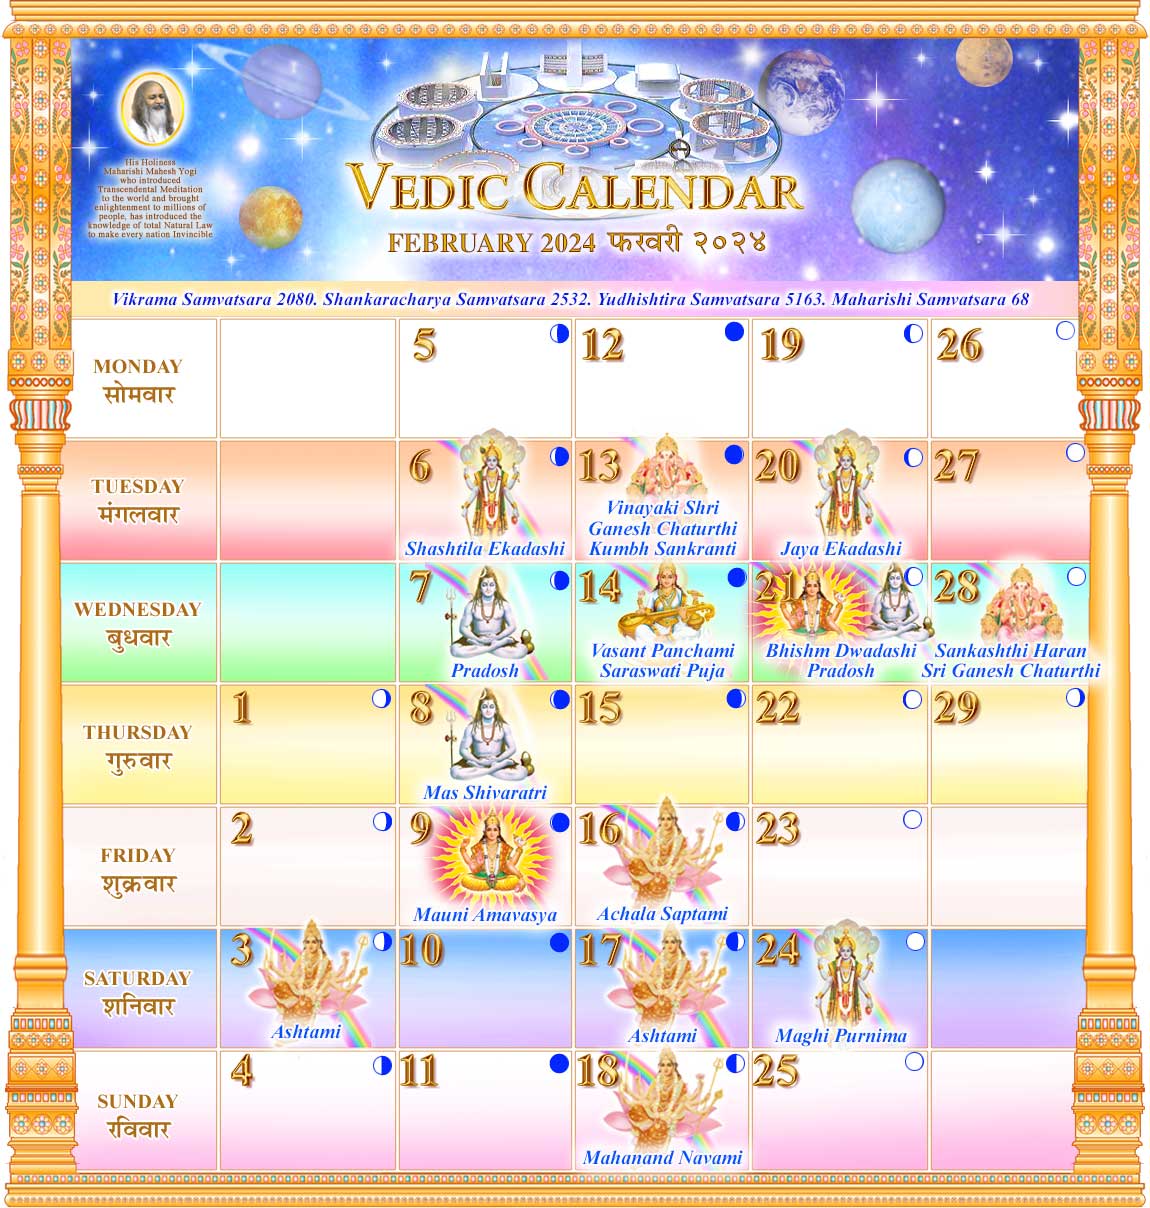 Vedic Calendar for February 2020